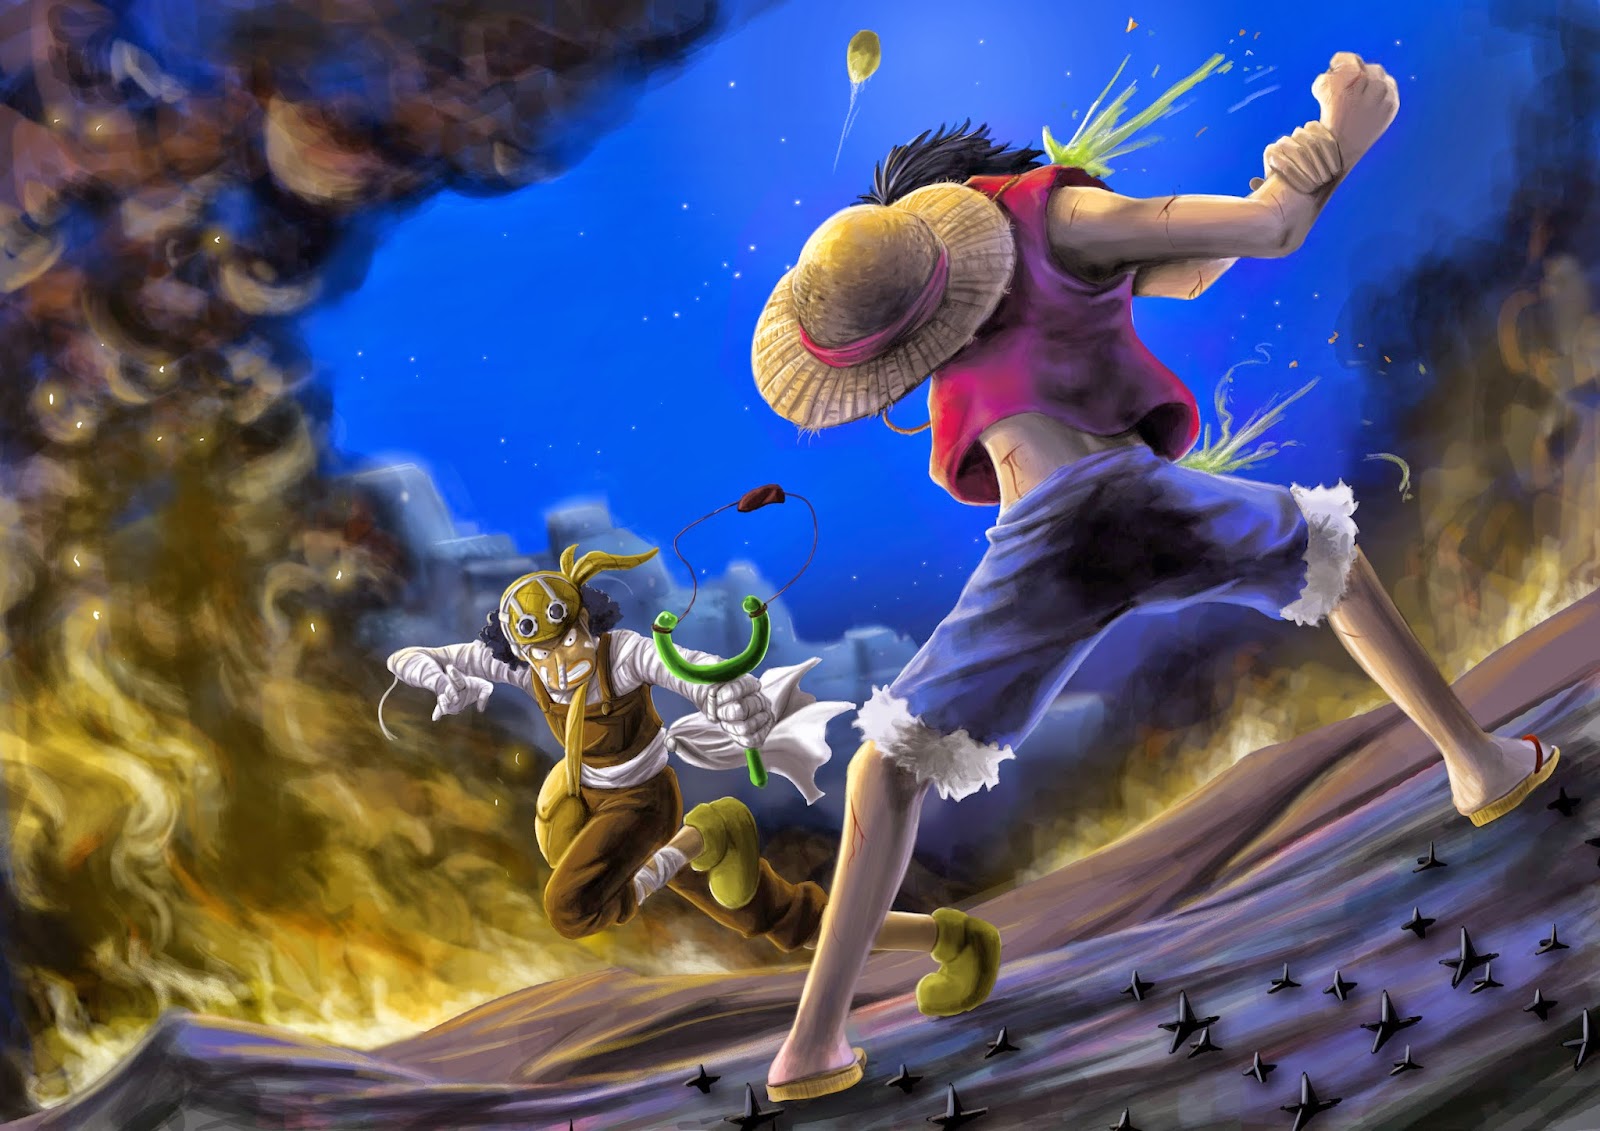 Tải Hình Nền One Piece Zoro Full HD Đẹp Nhất